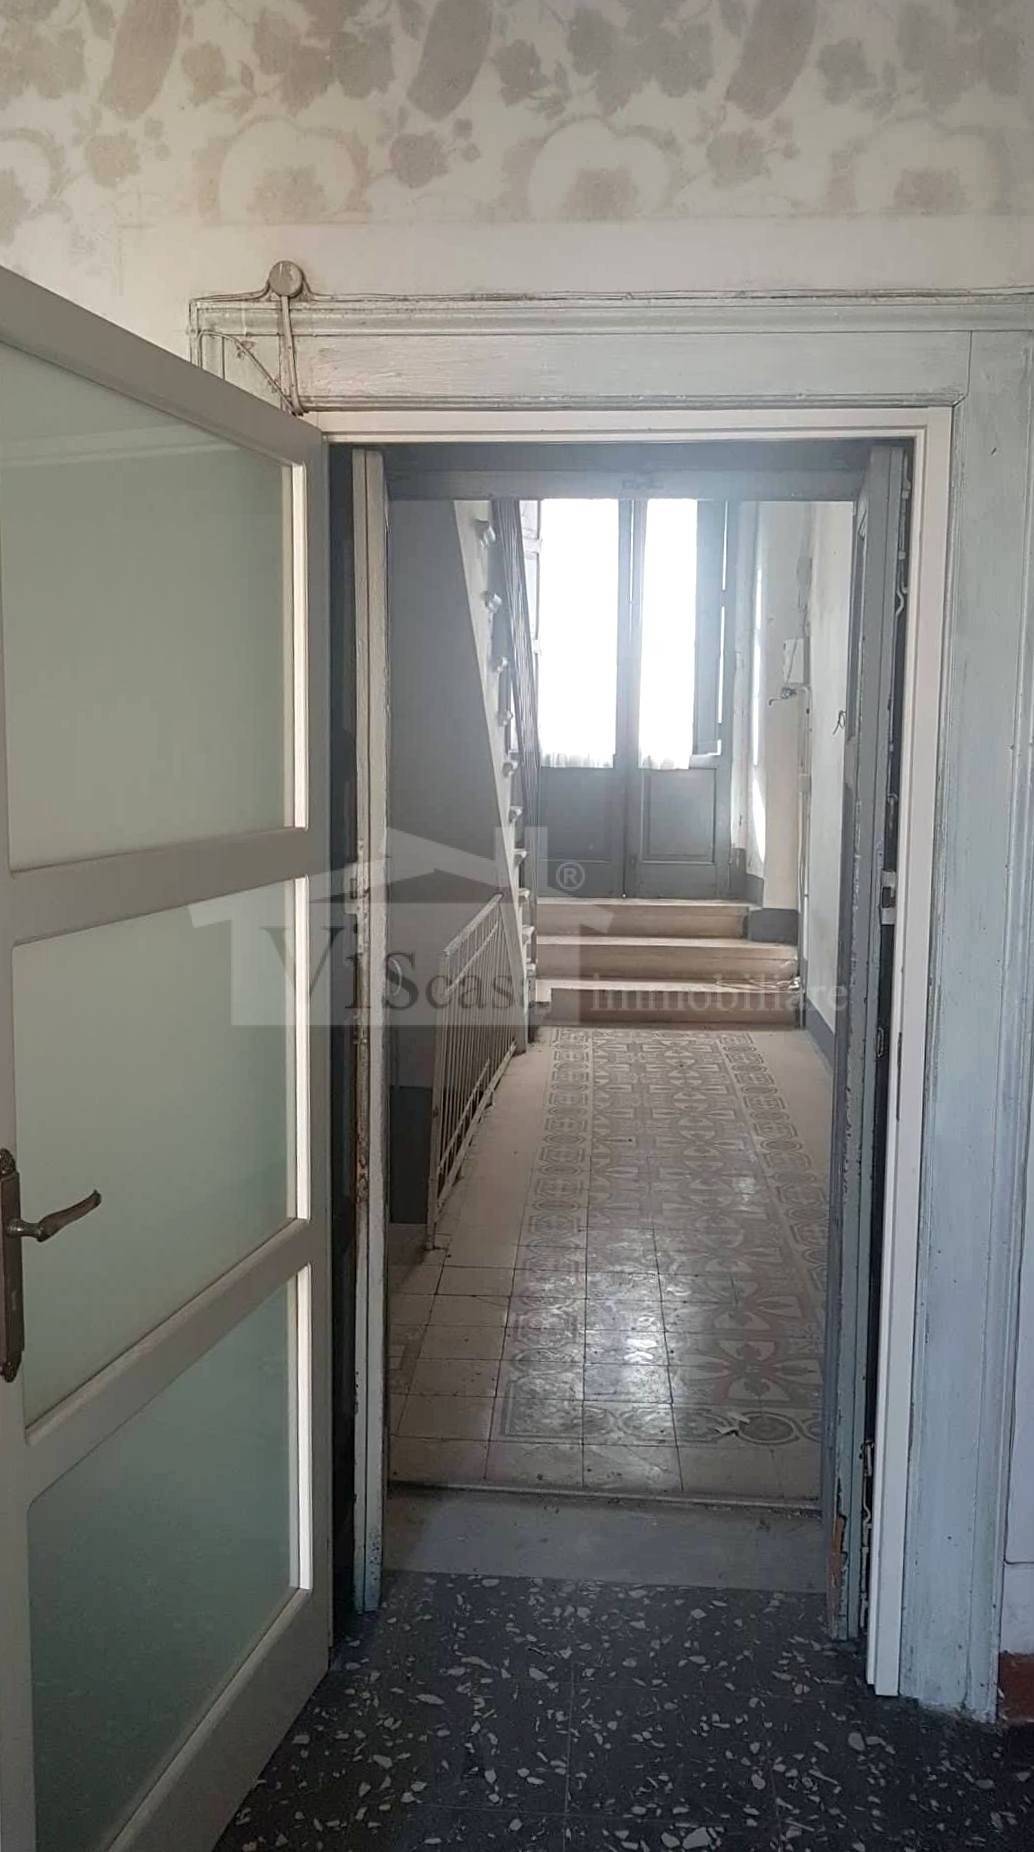 INTERO STABILE 350 mq – possibilità creazione 3 appartamenti con ascensore